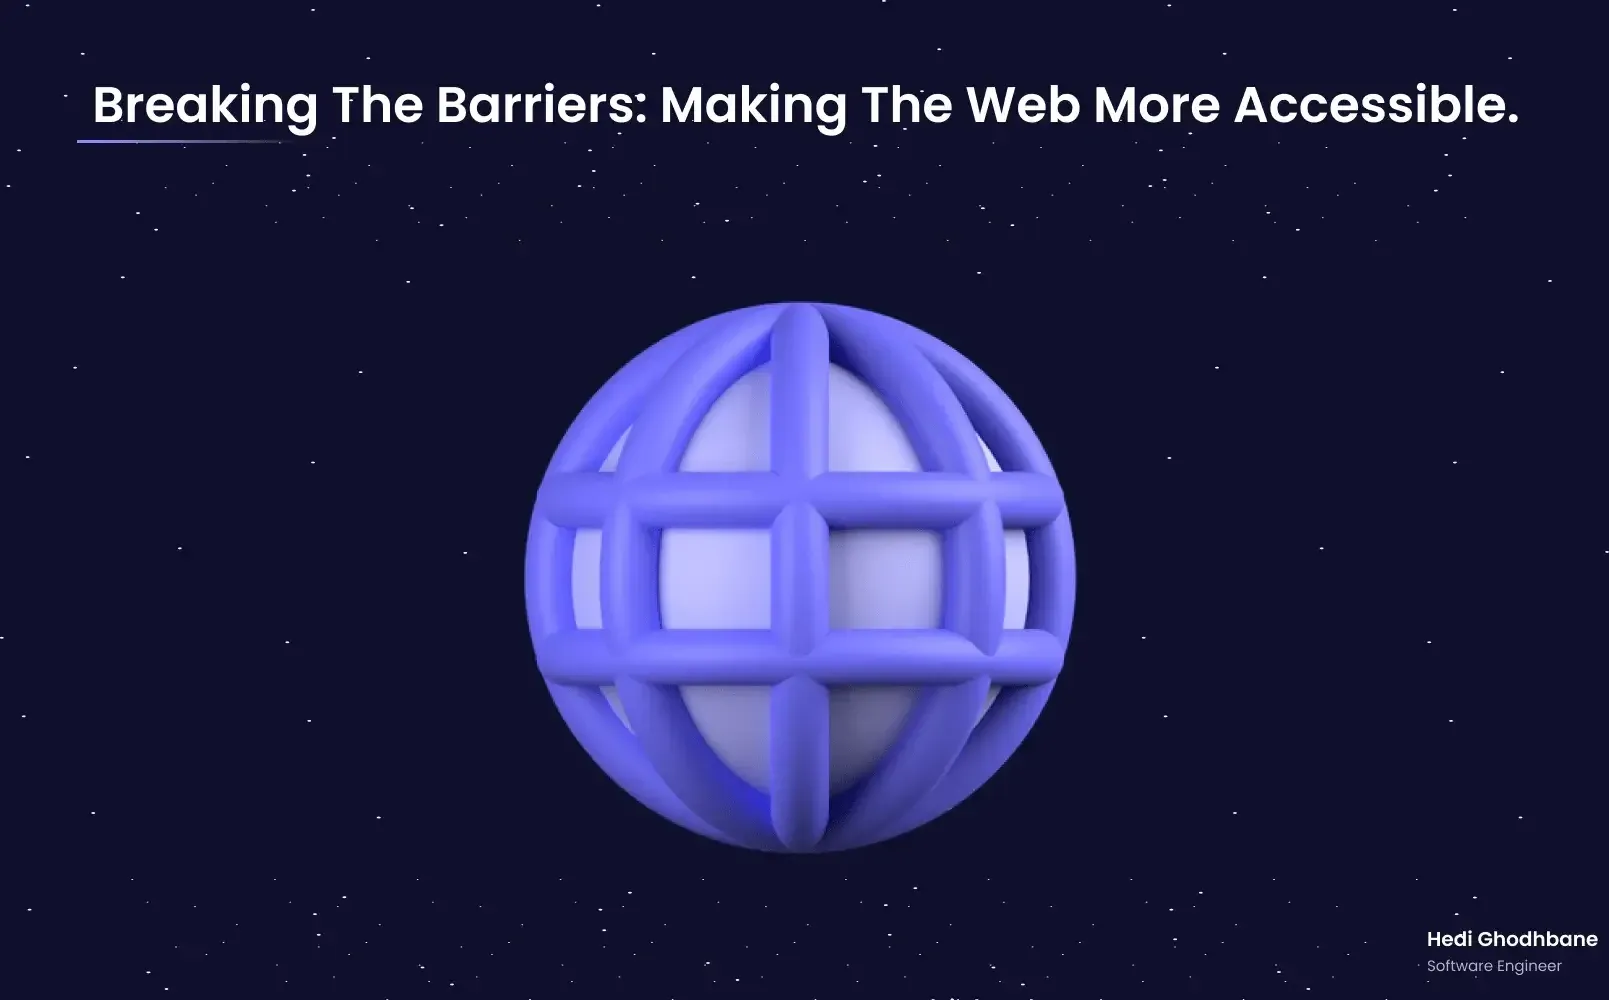 Web inklusiver gestalten: So geht barrierefreies Internet